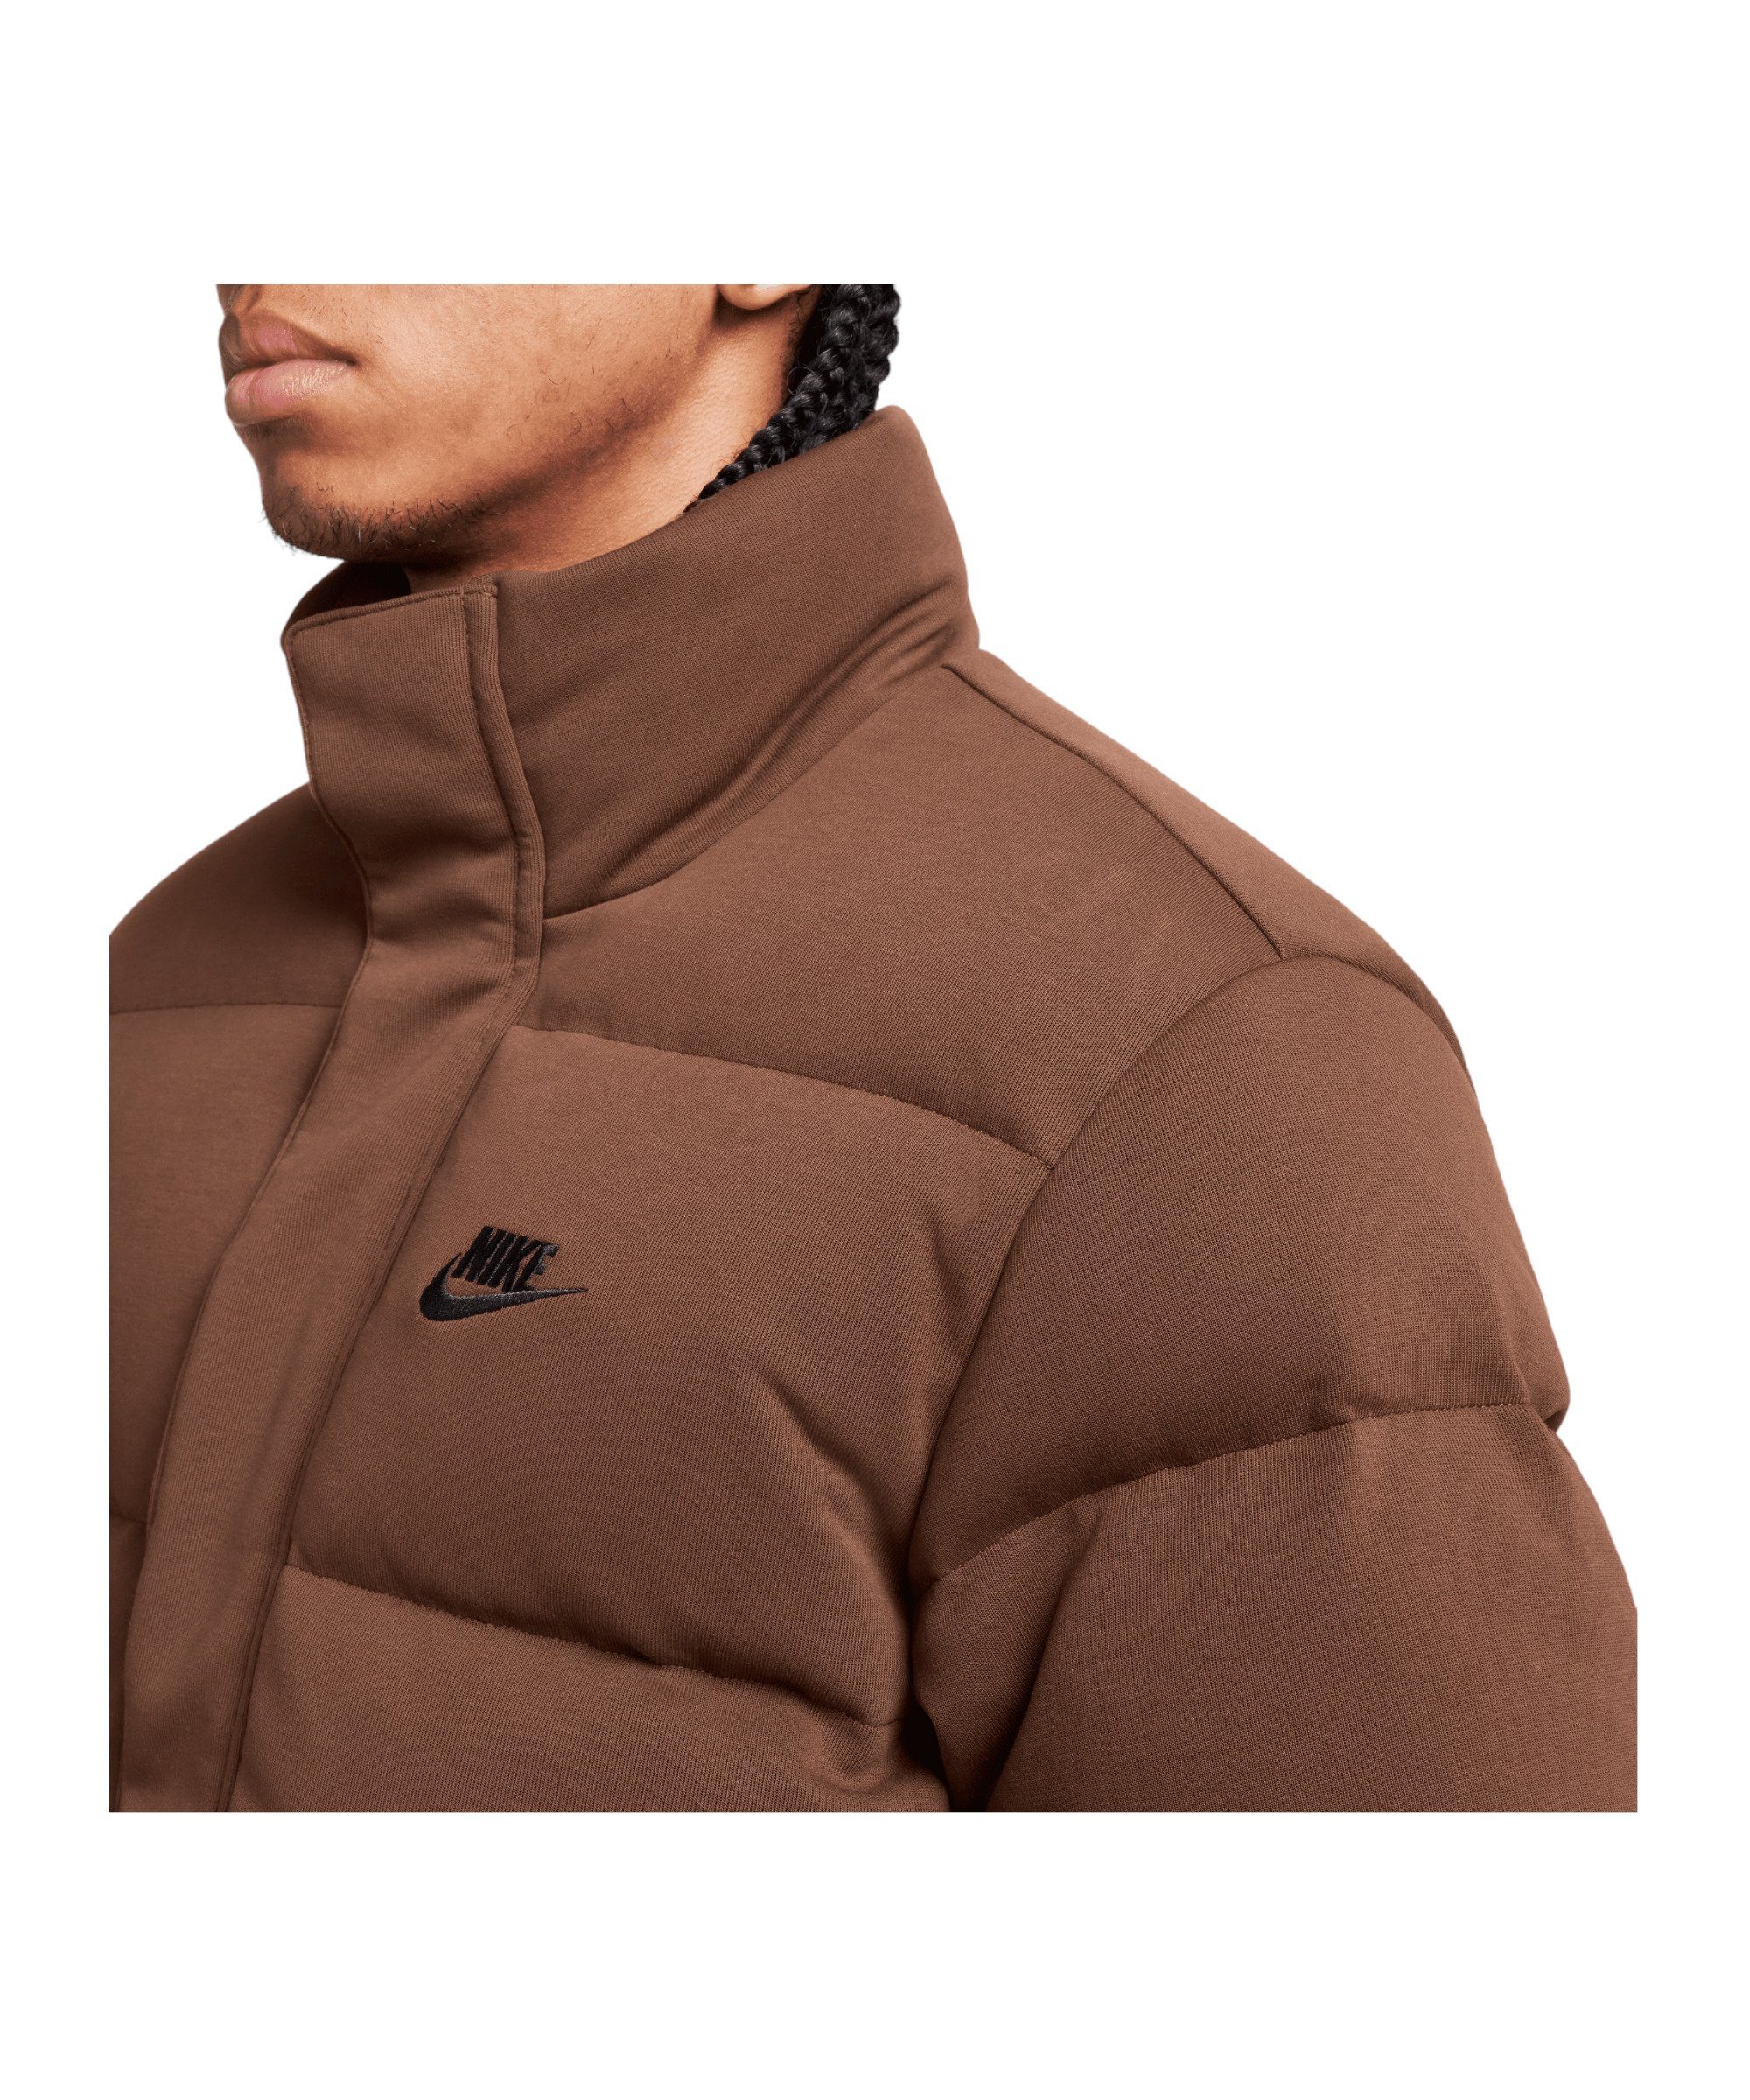 Nike Sportswear Tech braunschwarz Sweatjacke Jacke Fleece